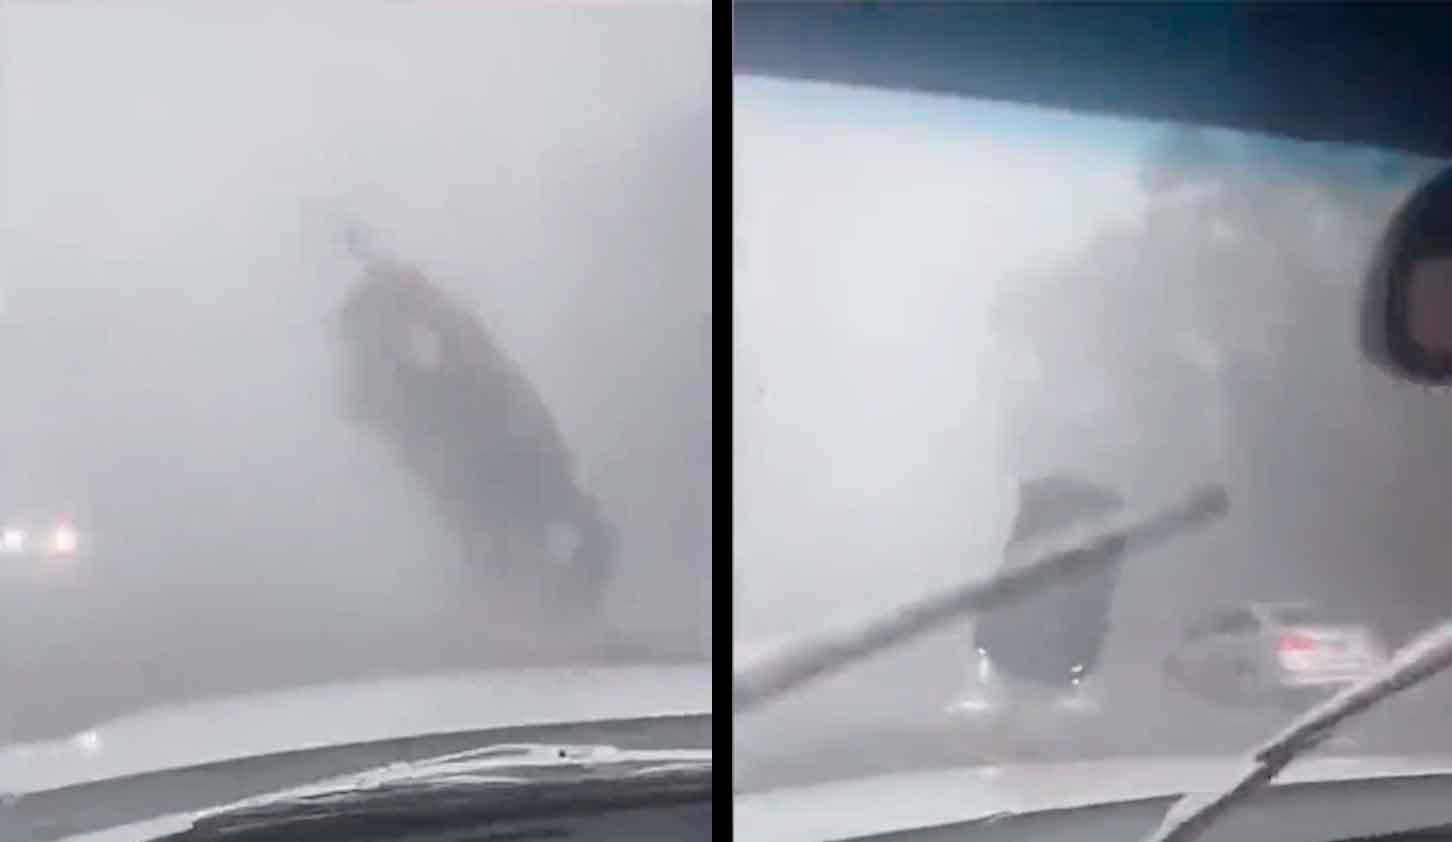 Vídeo mostra o momento em que um carro é arremessado no ar pelos fortes ventos gerados pelo furacão Idalia